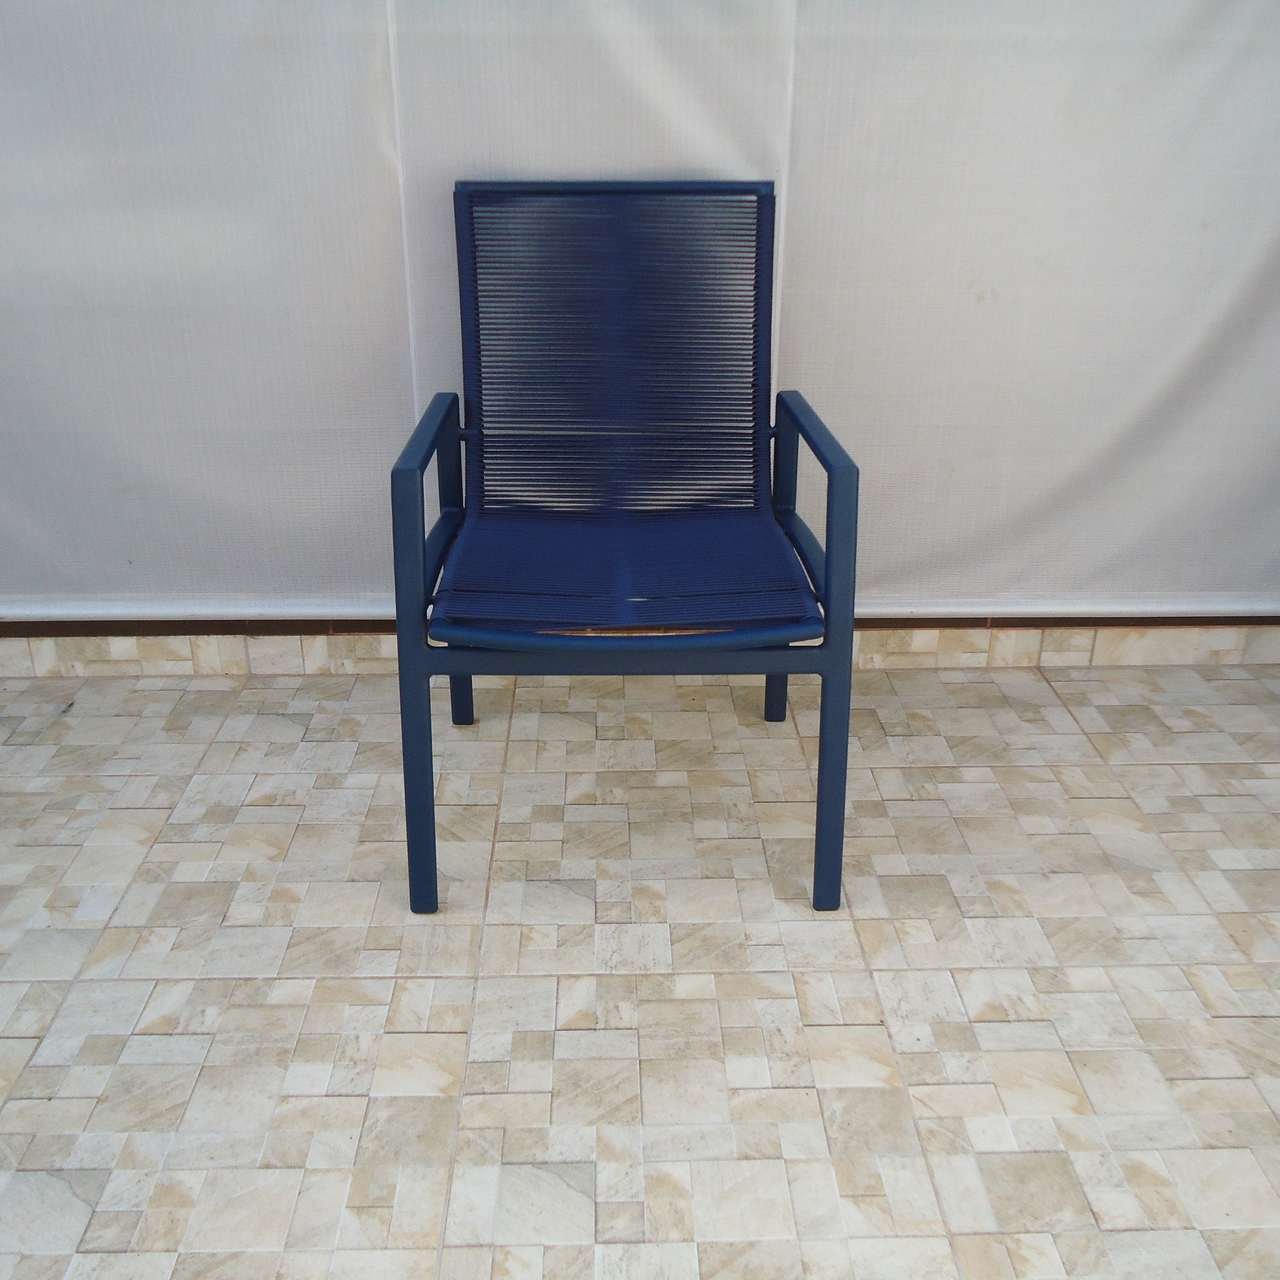 Cadeira Leblon - Alumínio com Corda Náutica - Alumínio Azul Marinho com Corda Náutica em Azul Marinh